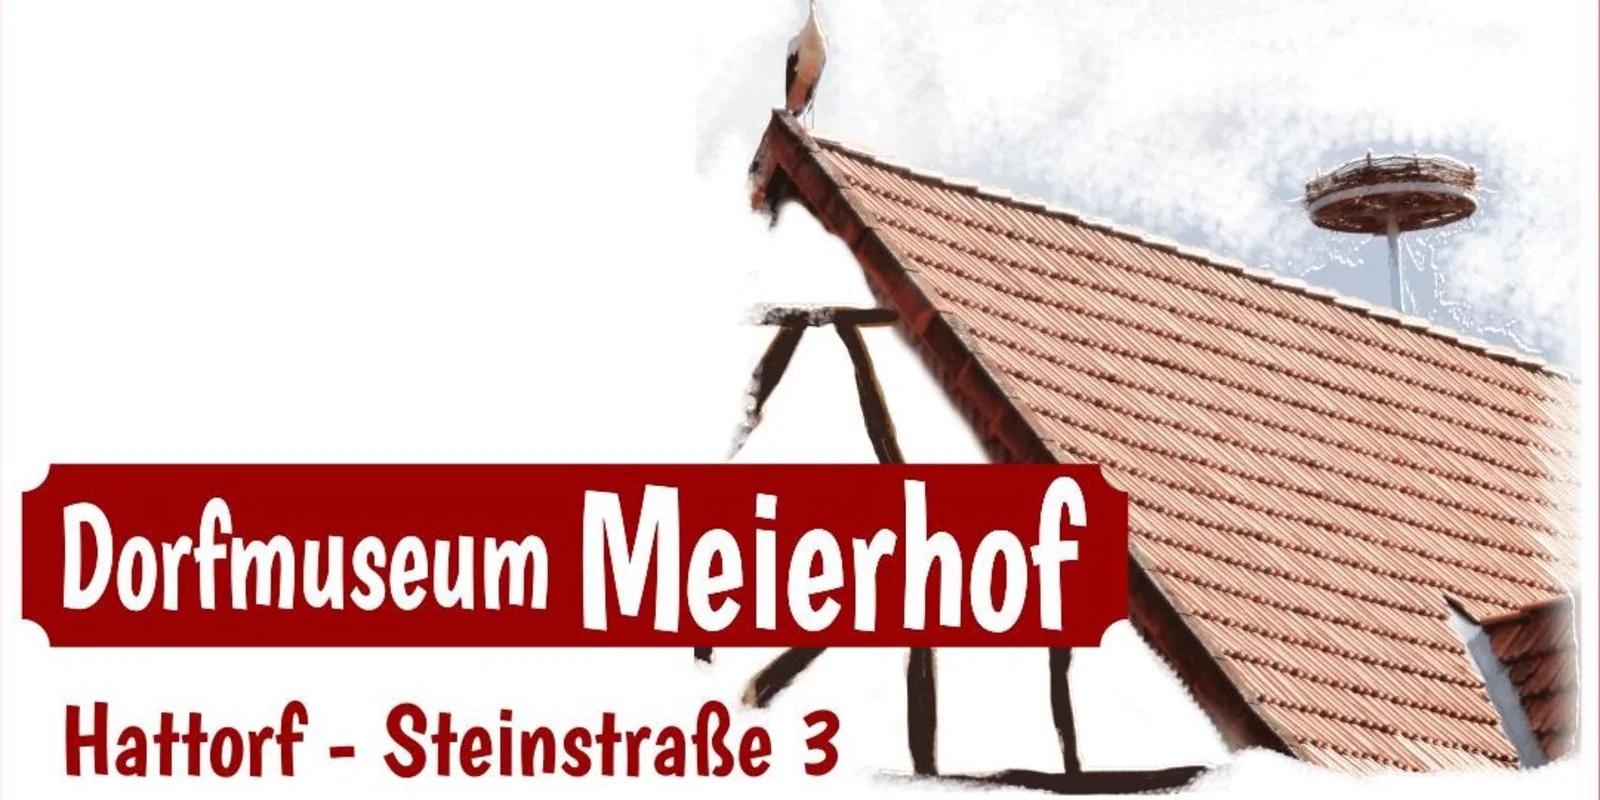 Dach eines Fachwerkshauses mit Storchennest, im Vordergrund der Schriftzug "Dorfmuseum Meierhof"